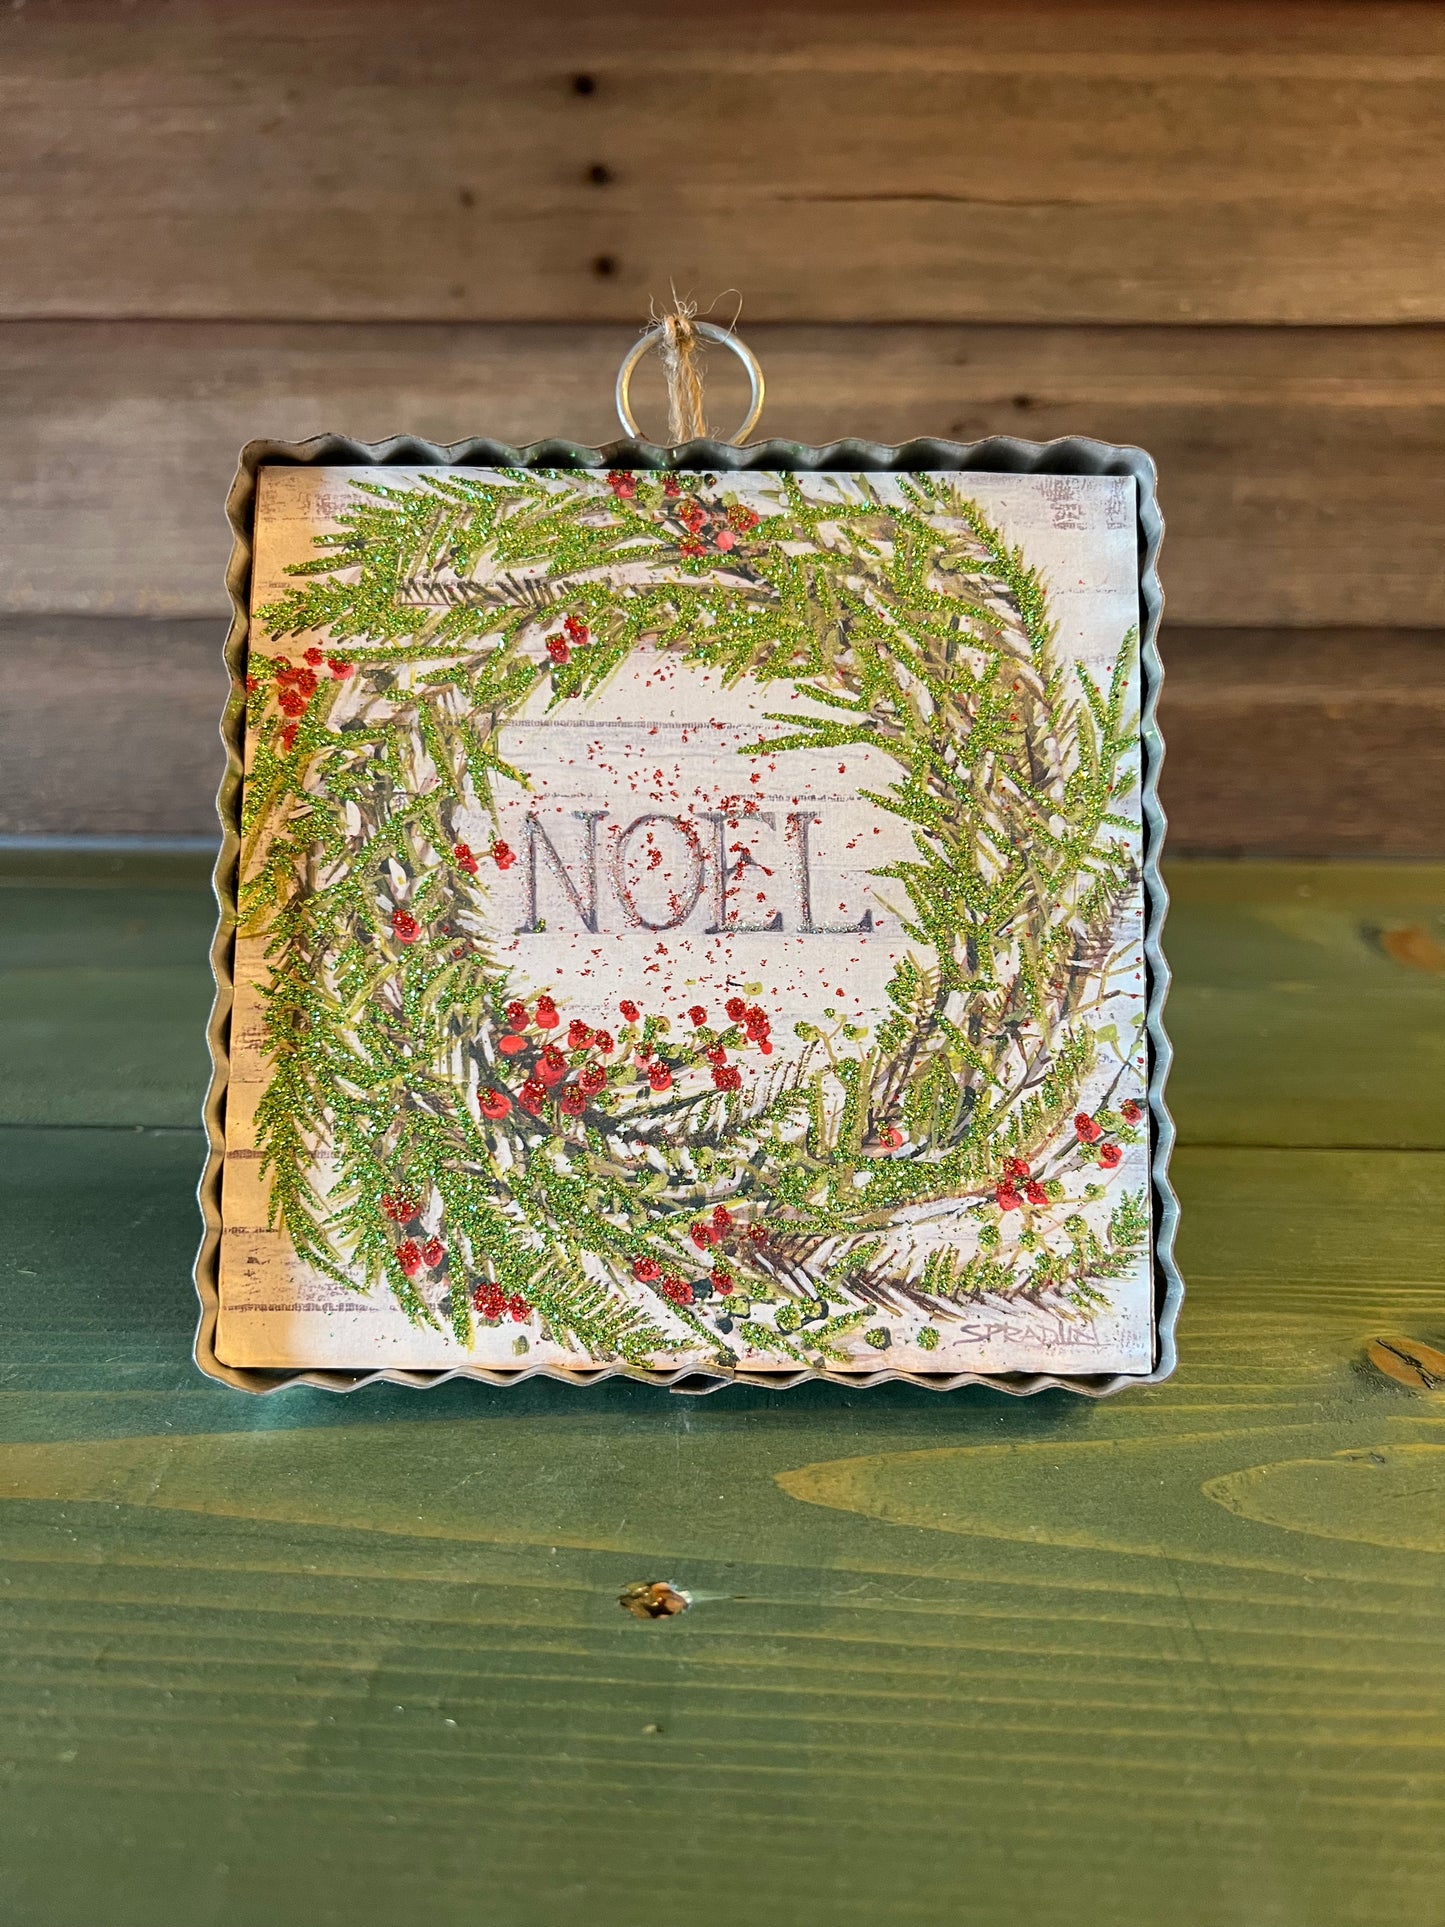 Gallery “Noel" Wreath